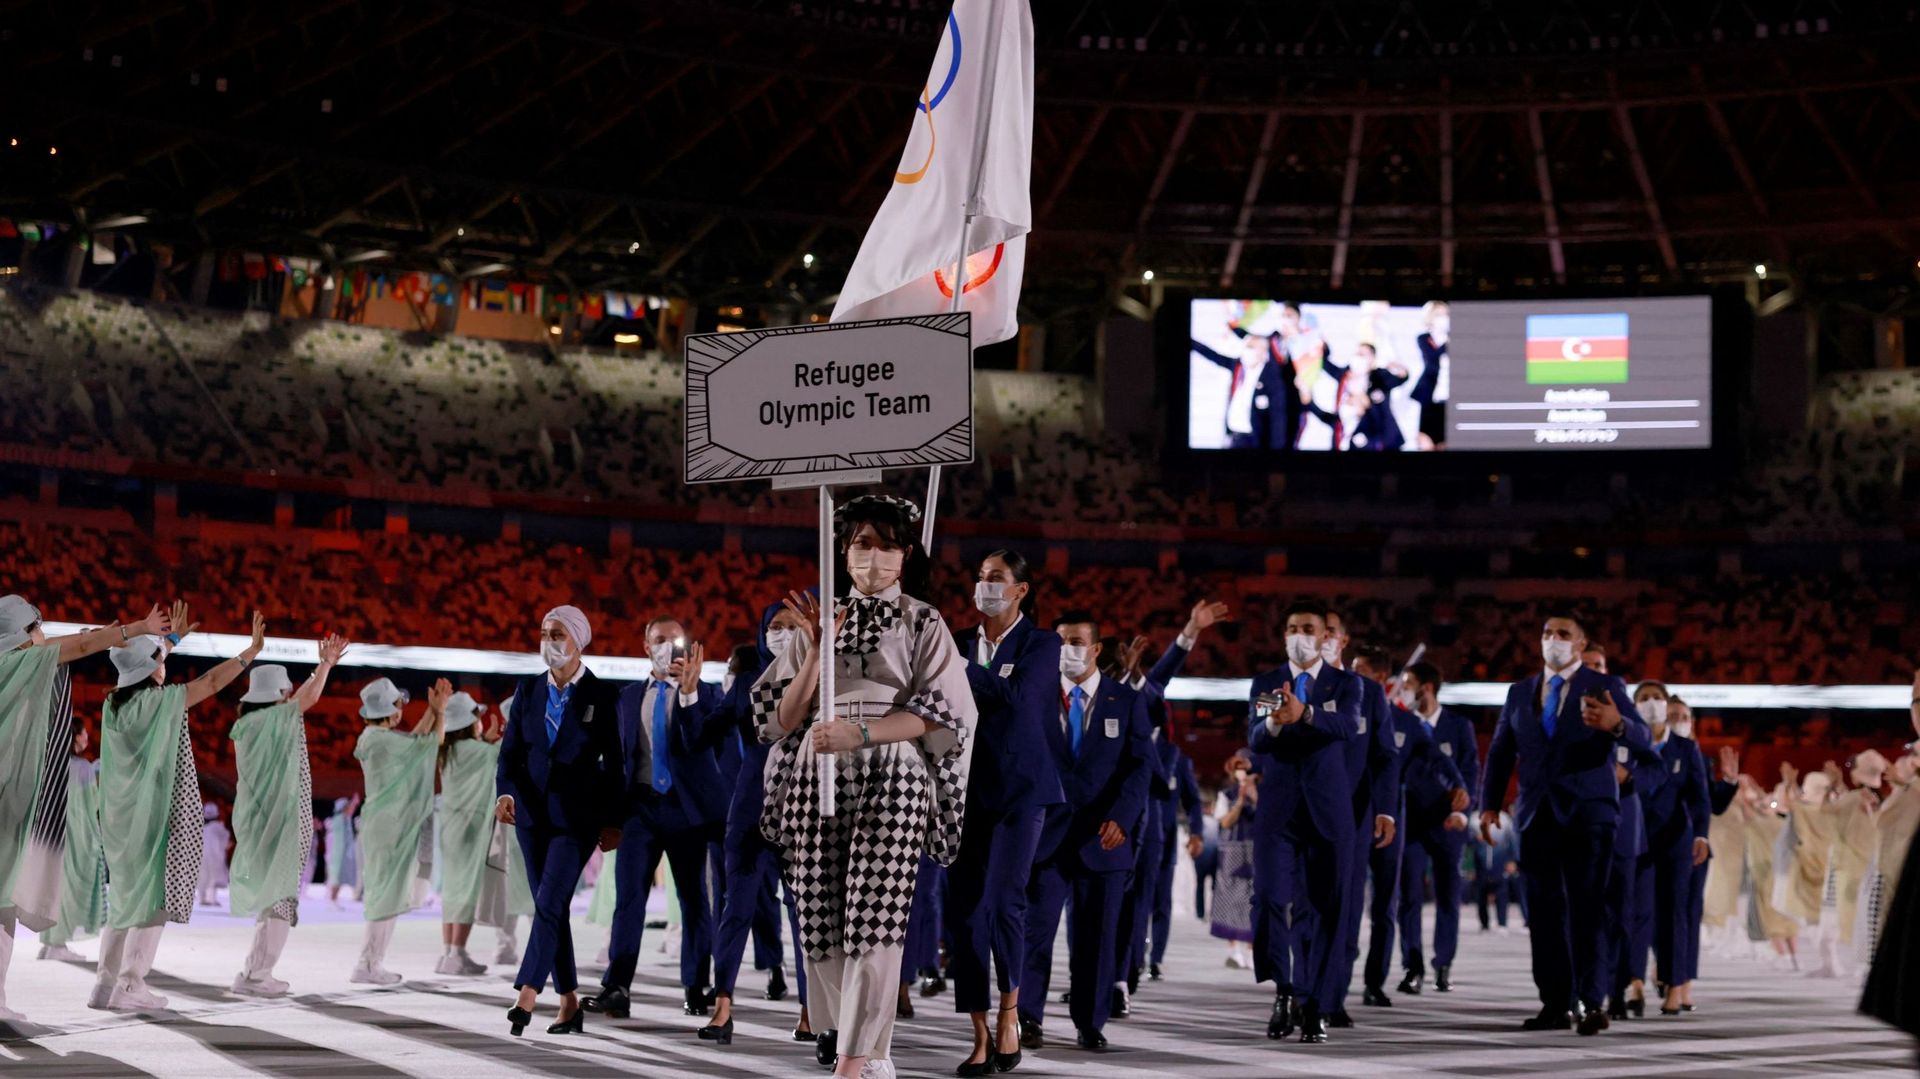 Des membres de l’équipe olympique des réfugiés participaient à la cérémonie d’ouverture à Tokyo